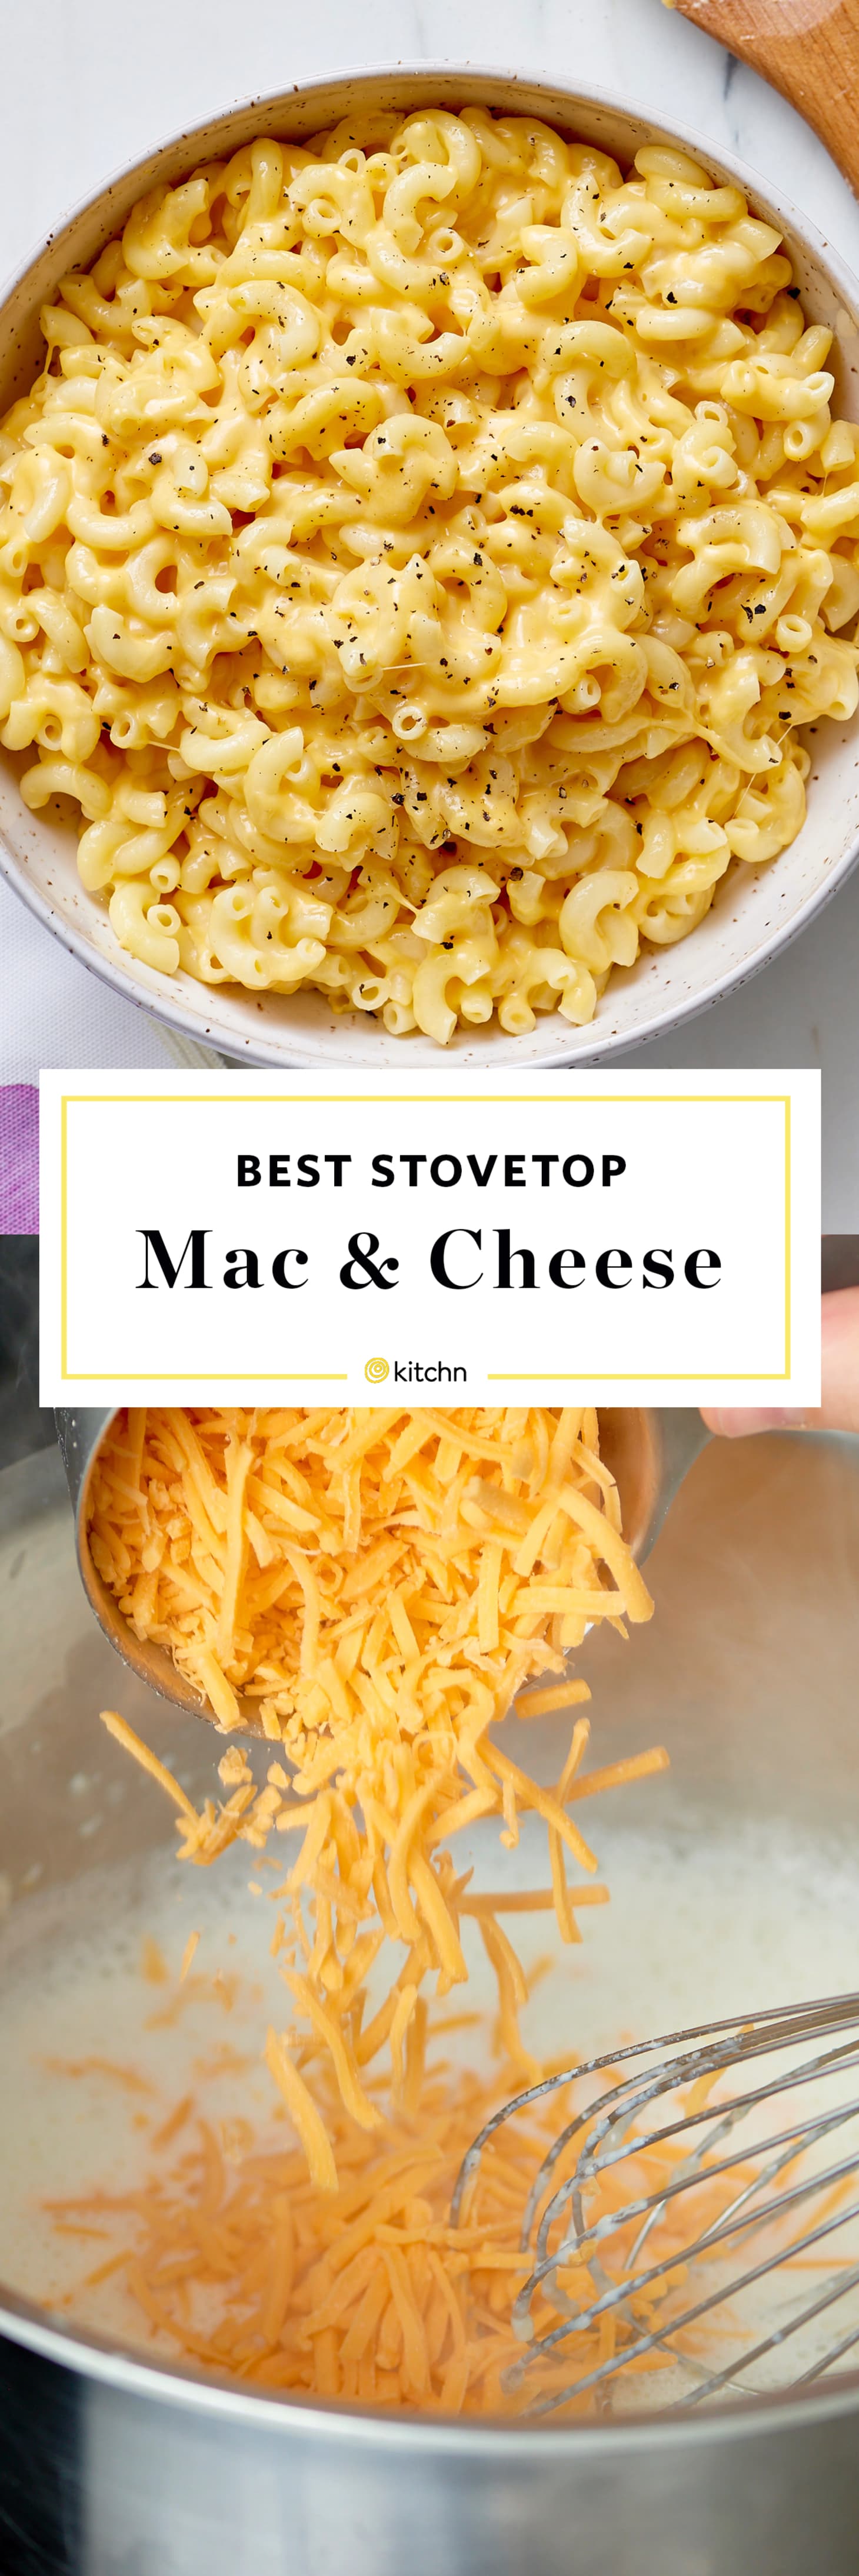 make mac n cheese better